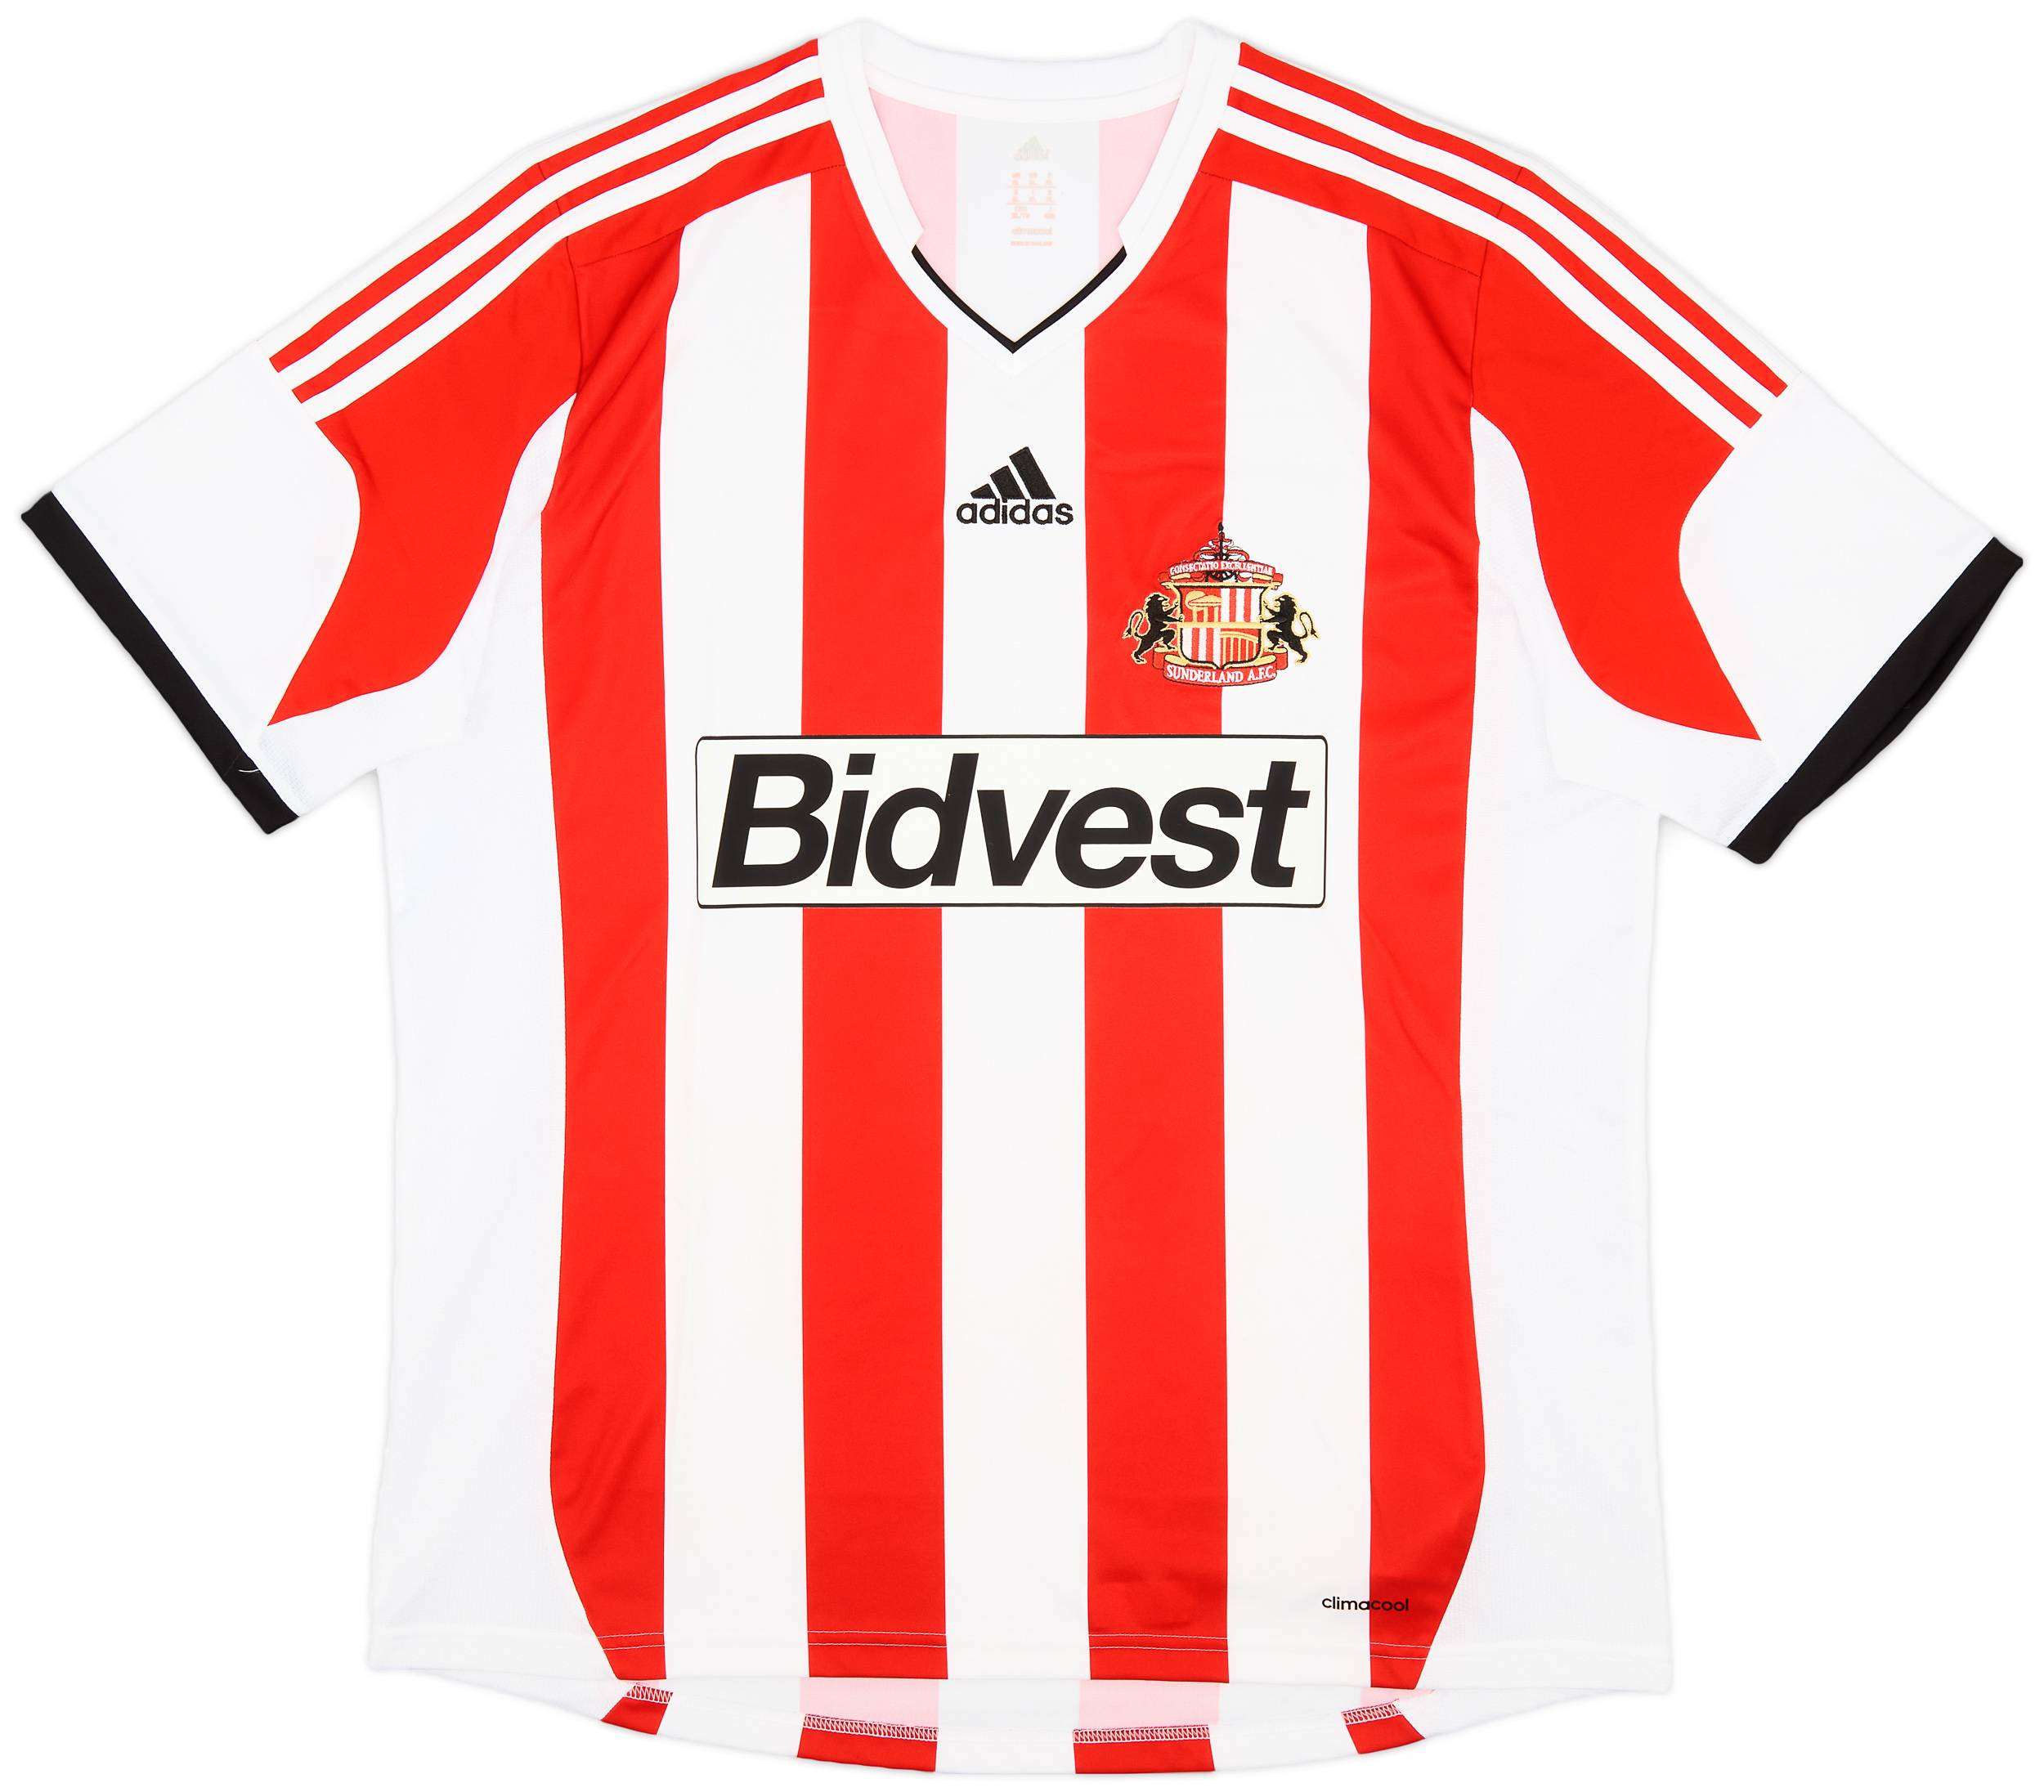 2013-14 Sunderland Home Shirt - 9/10 - (XL)